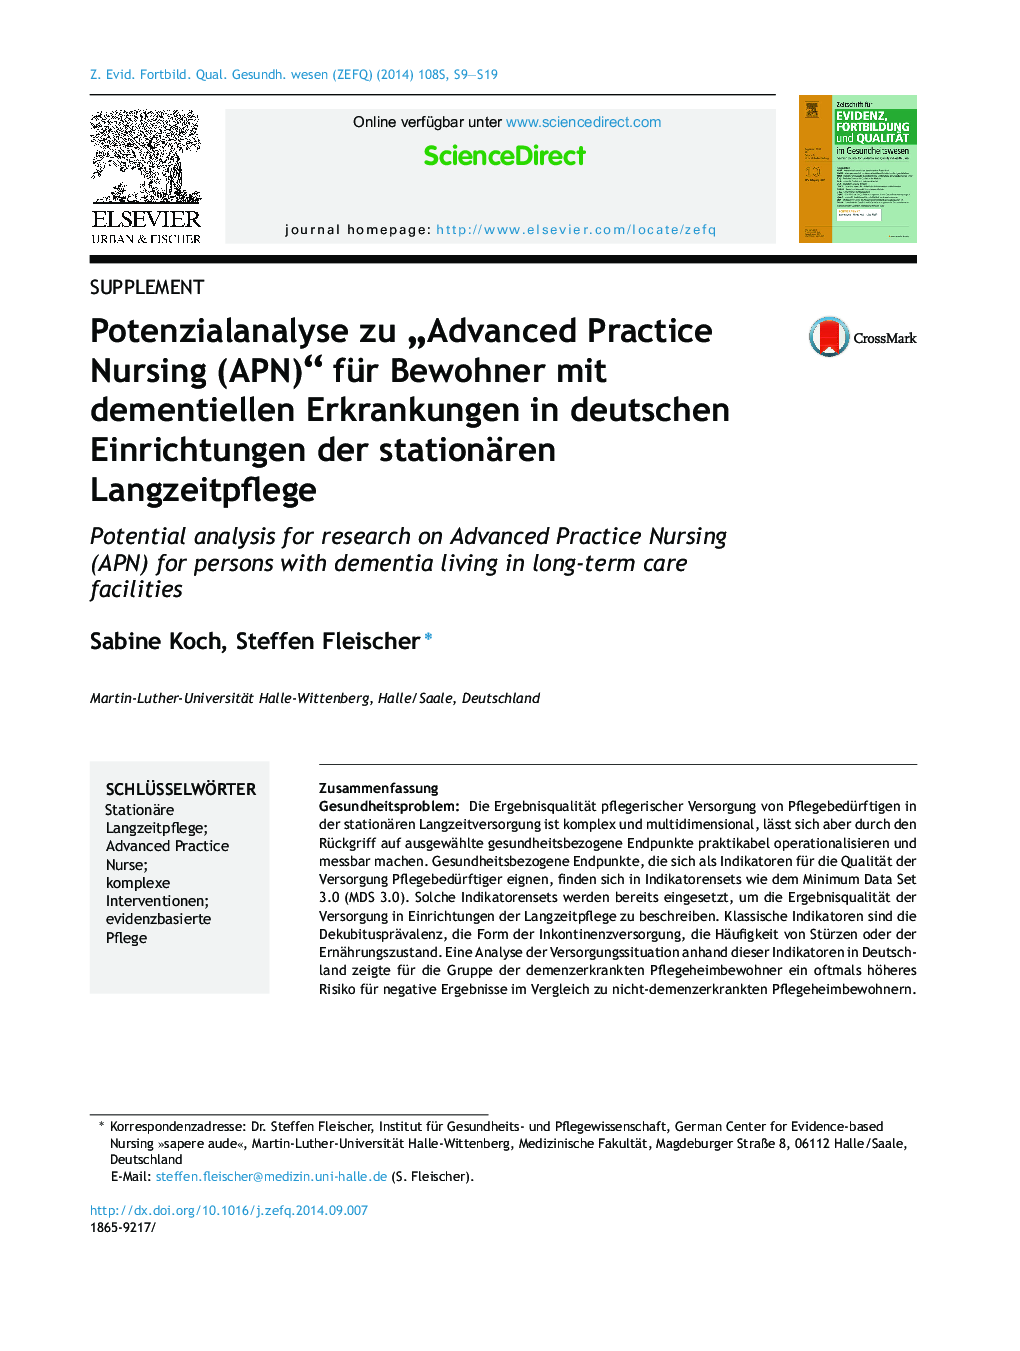 Potenzialanalyse zu „Advanced Practice Nursing (APN)“ für Bewohner mit dementiellen Erkrankungen in deutschen Einrichtungen der stationären Langzeitpflege